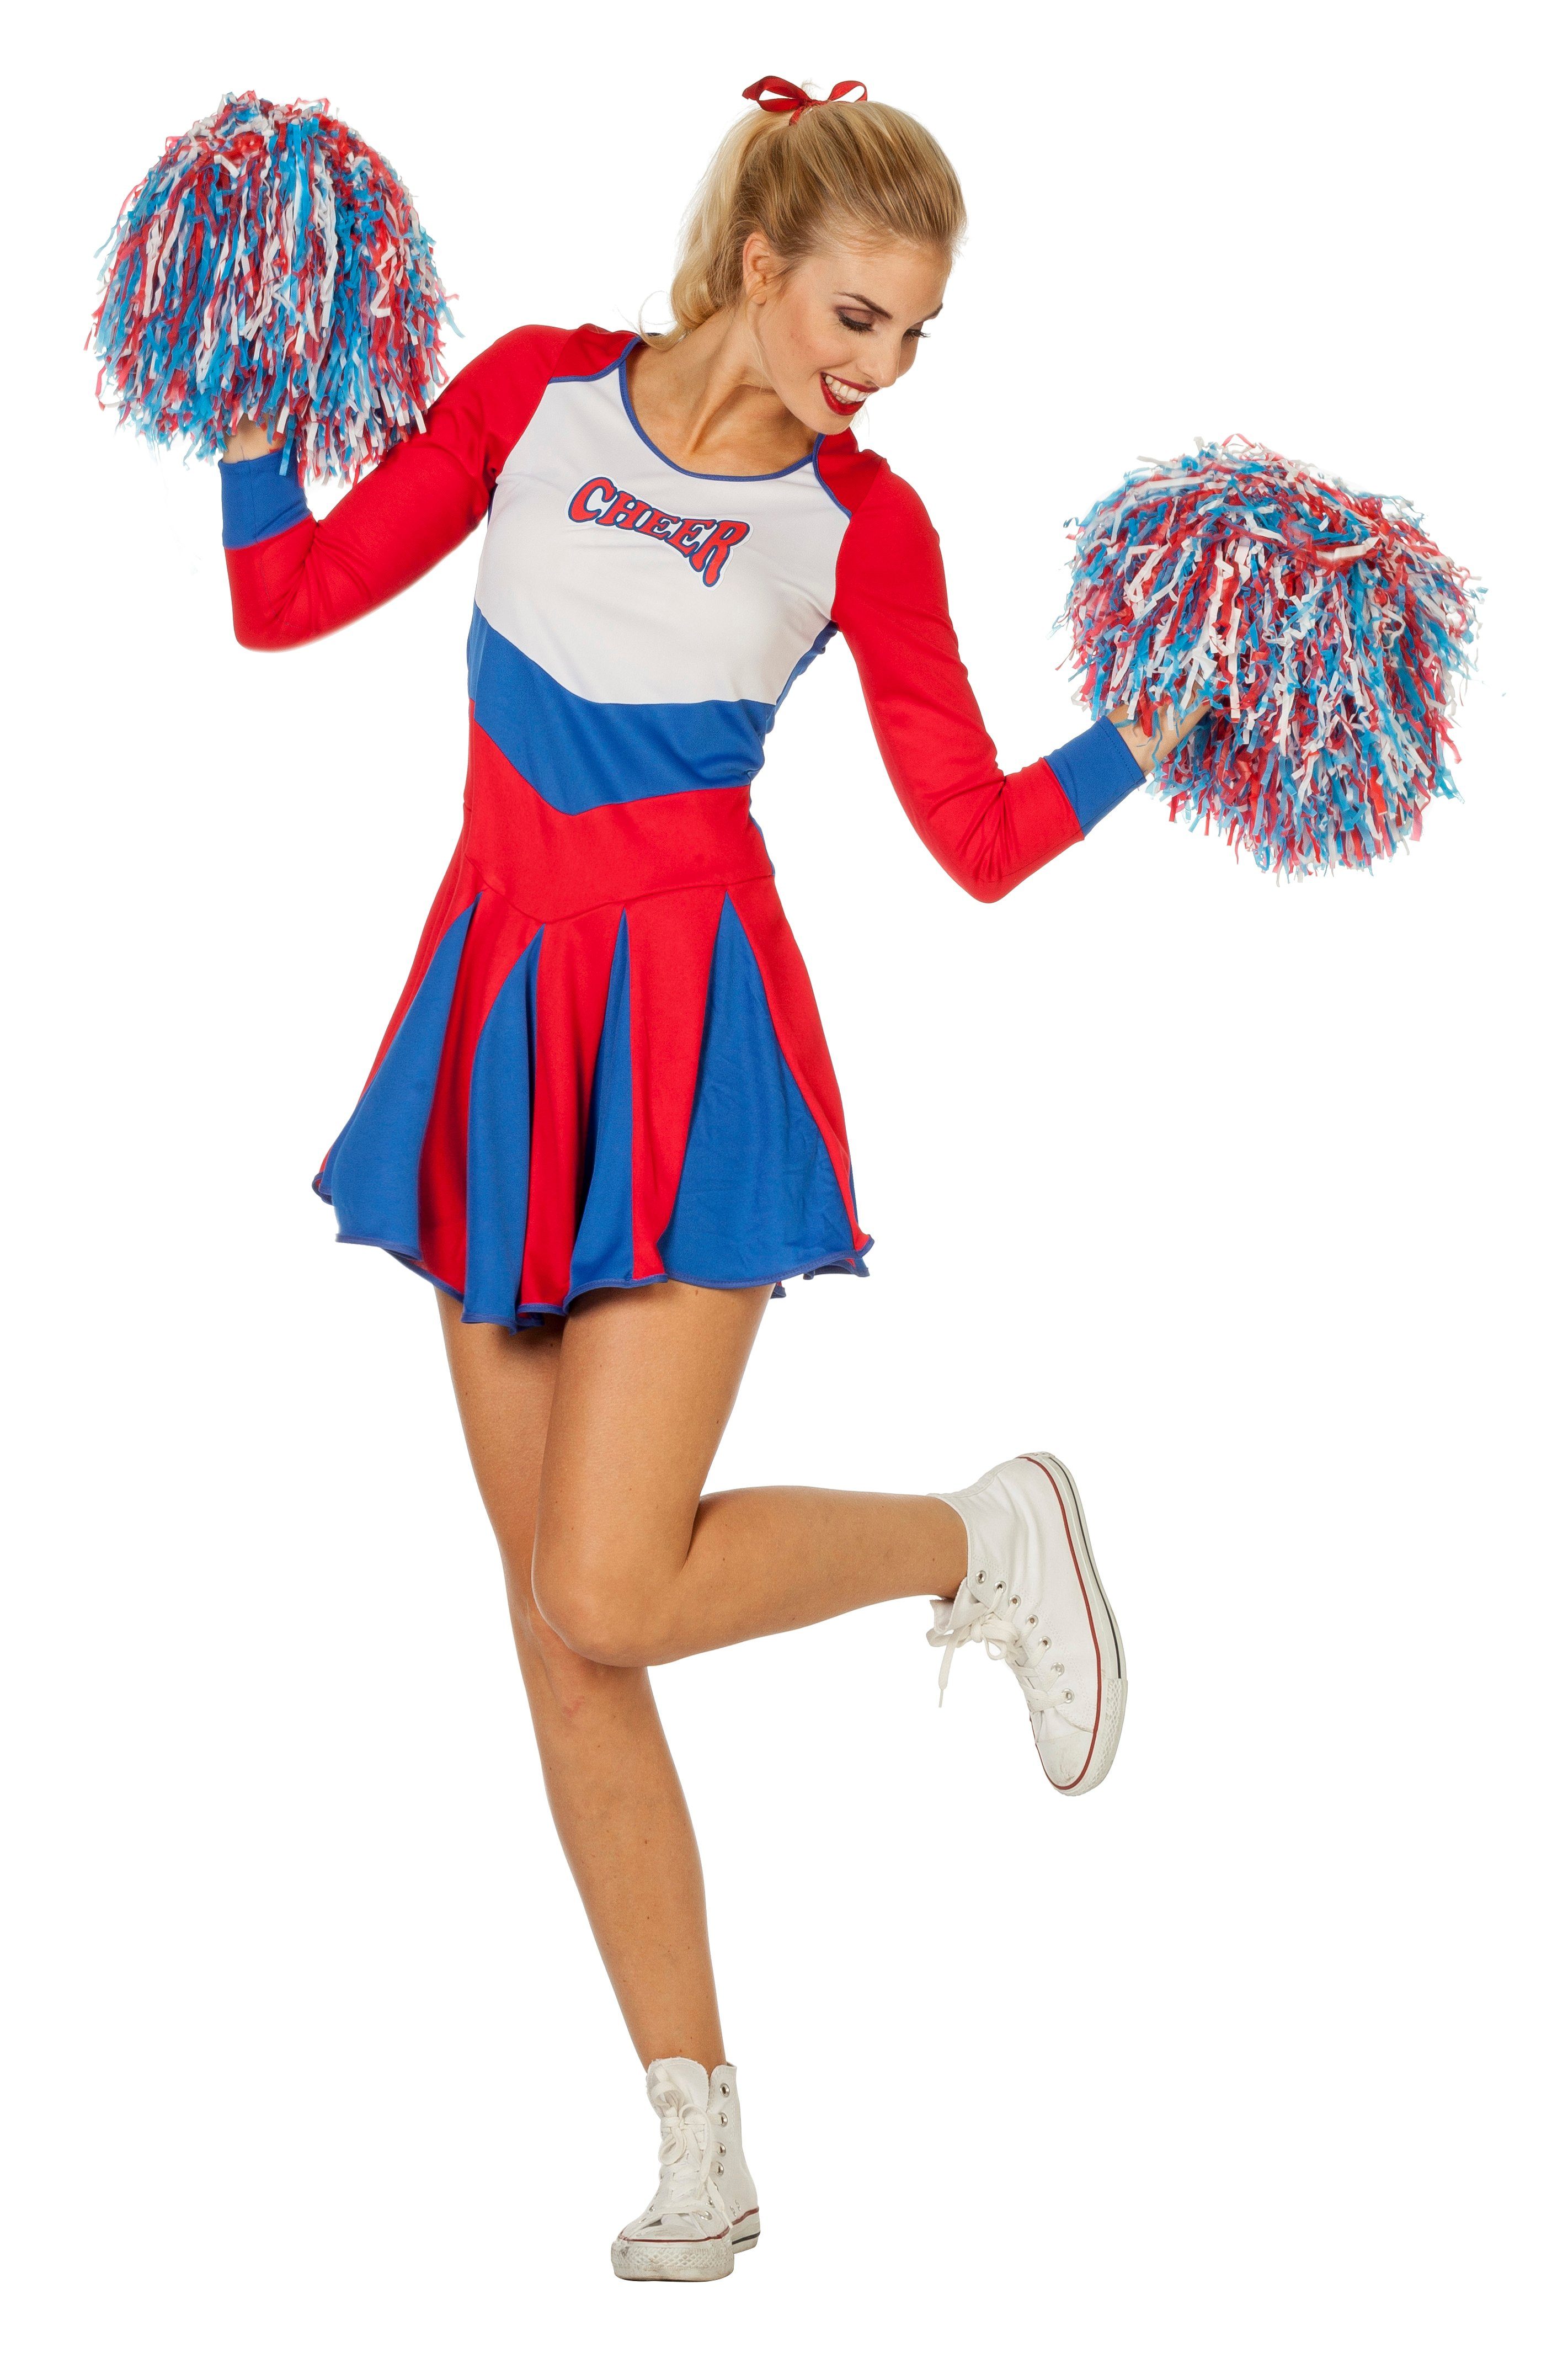 Wilbers Kostüm »Wilbers Damen Cheerleader Kostüm Kleid Cheer Leader Dame  Uniform Football Rubgy« online kaufen | OTTO